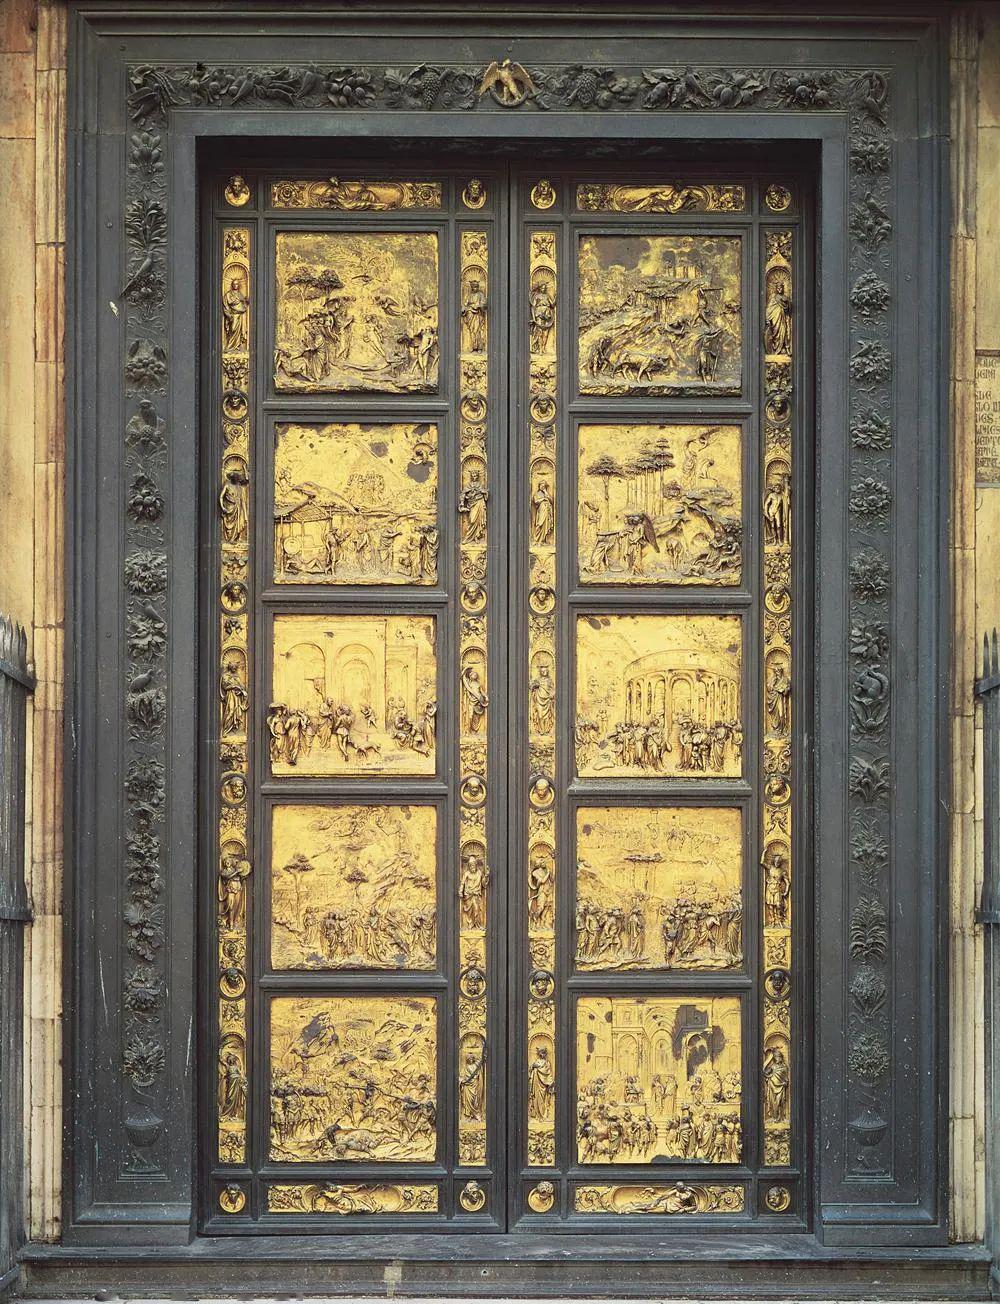 图25,吉贝尔蒂,天堂之门,浮雕,佛罗伦萨洗礼堂,16世纪《天堂之门》